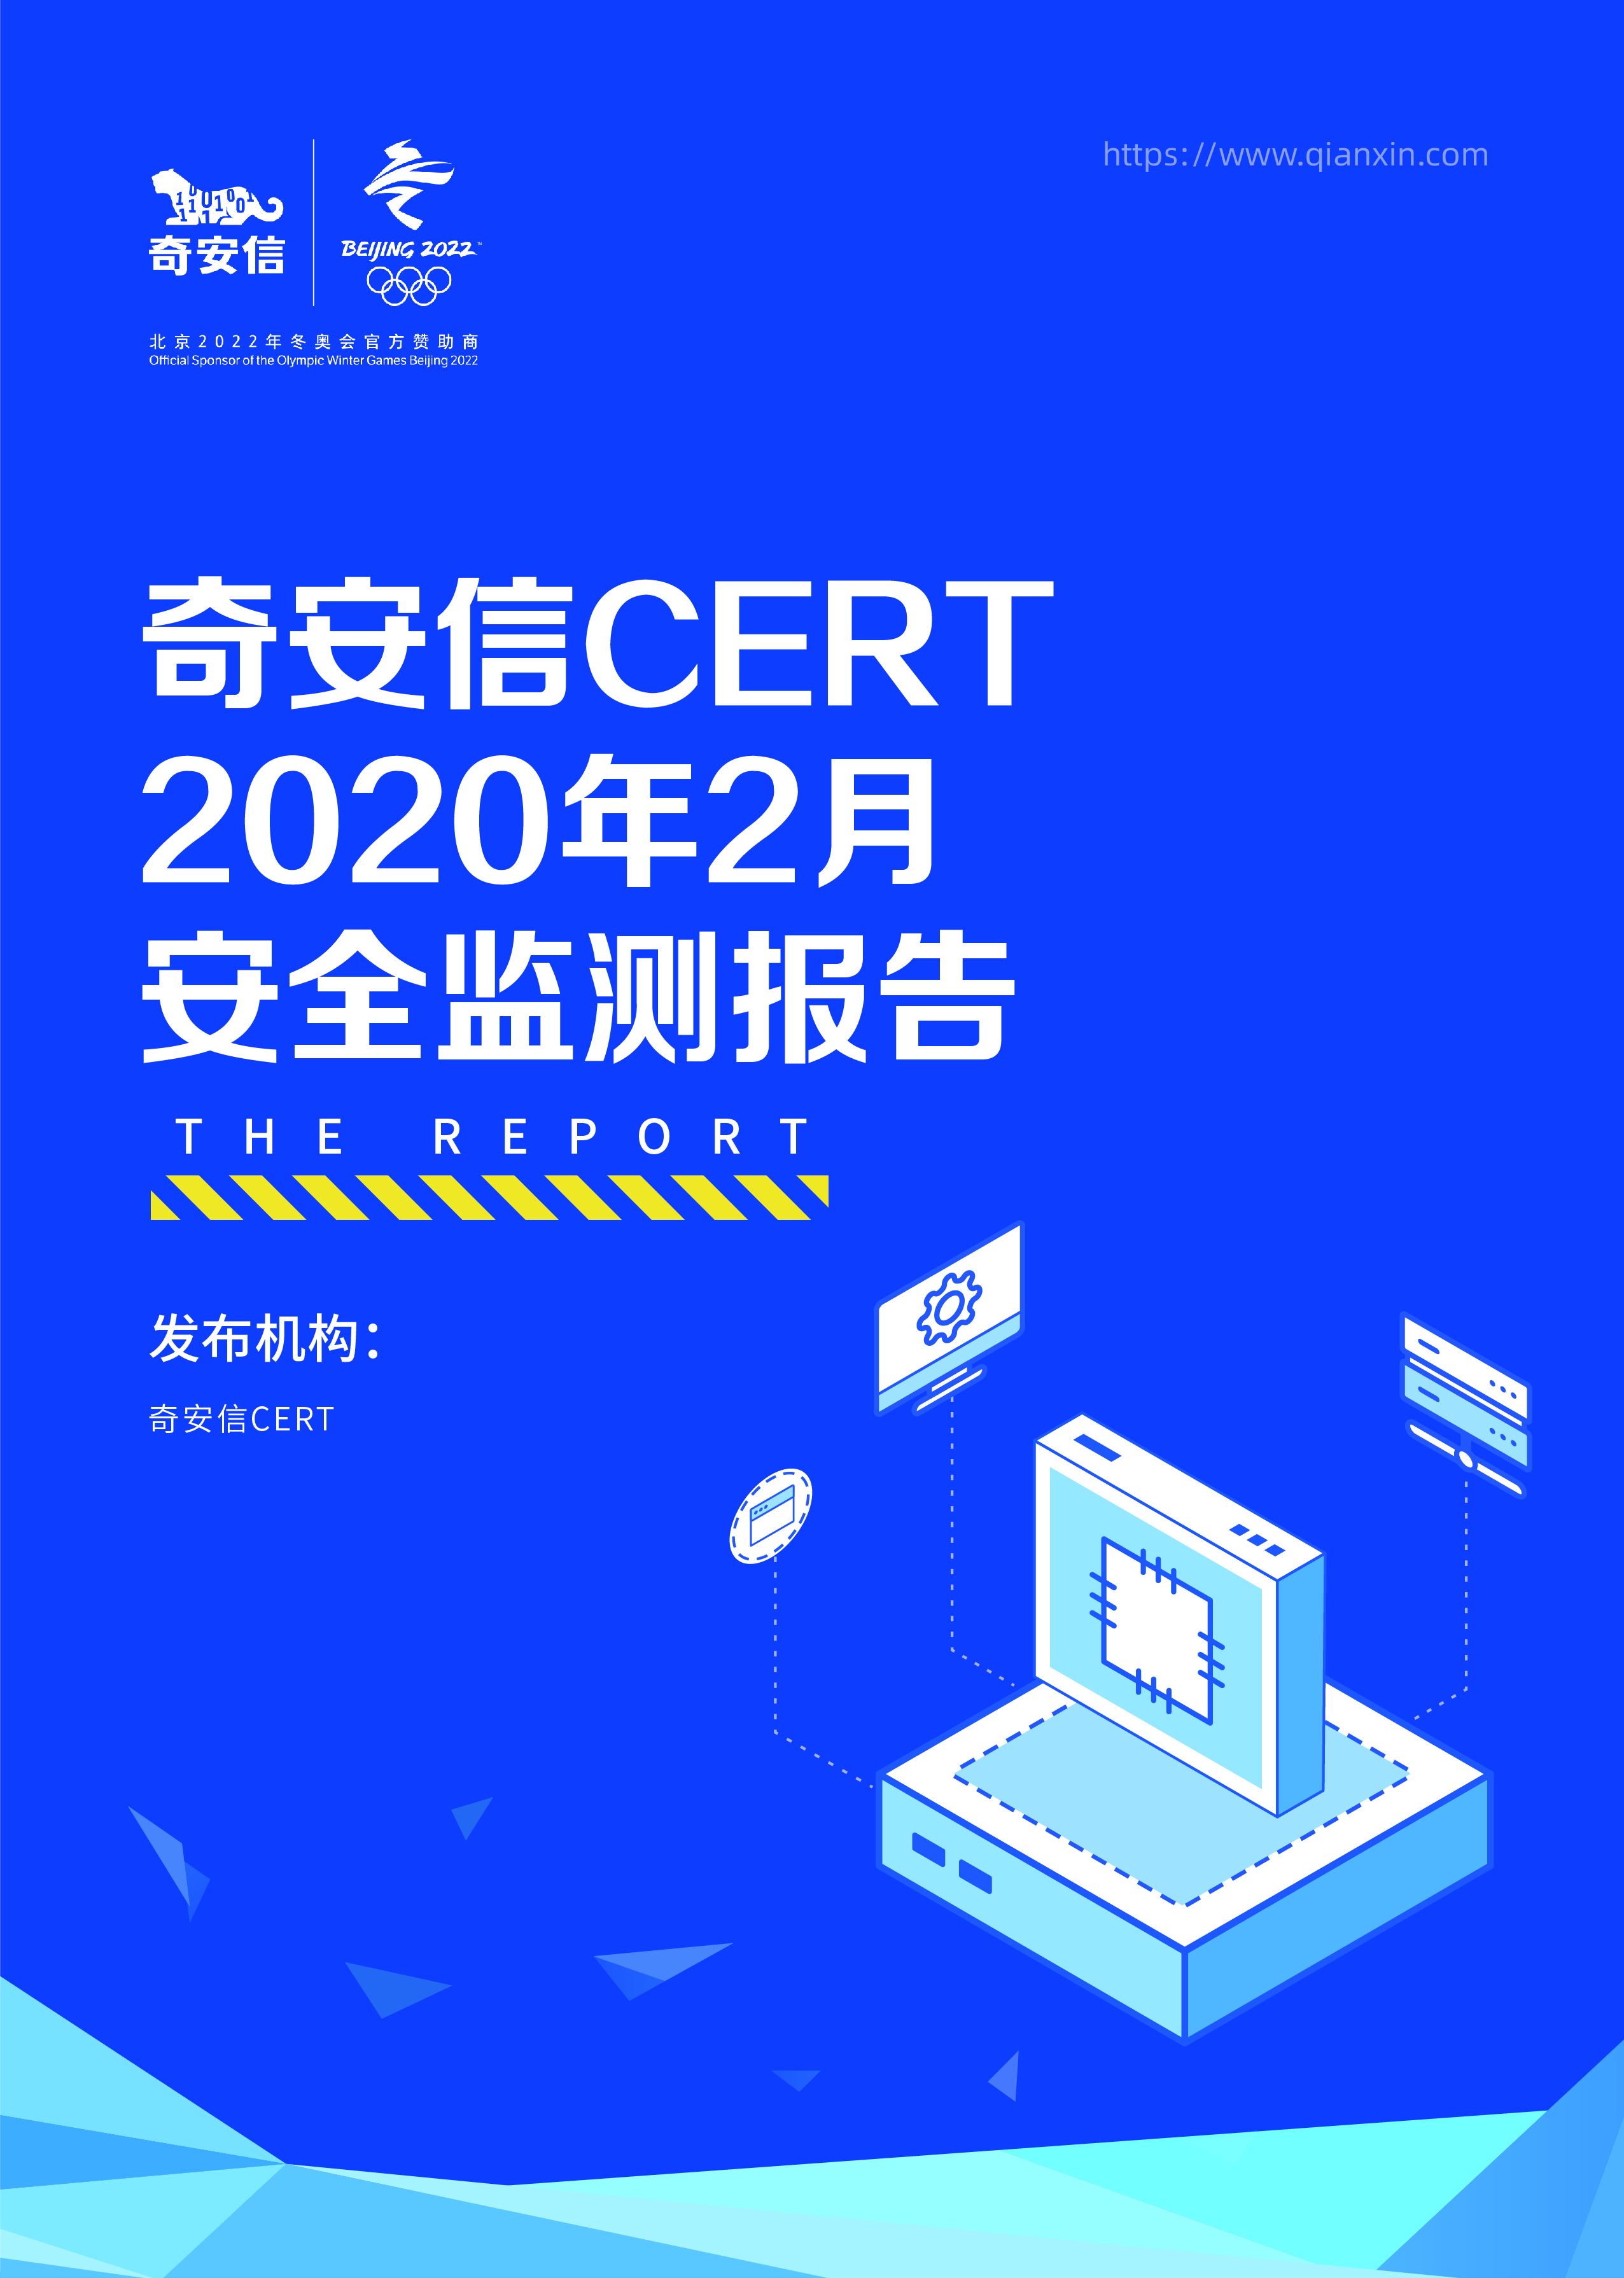 奇安信 CERT 2020年2月安全监测报告